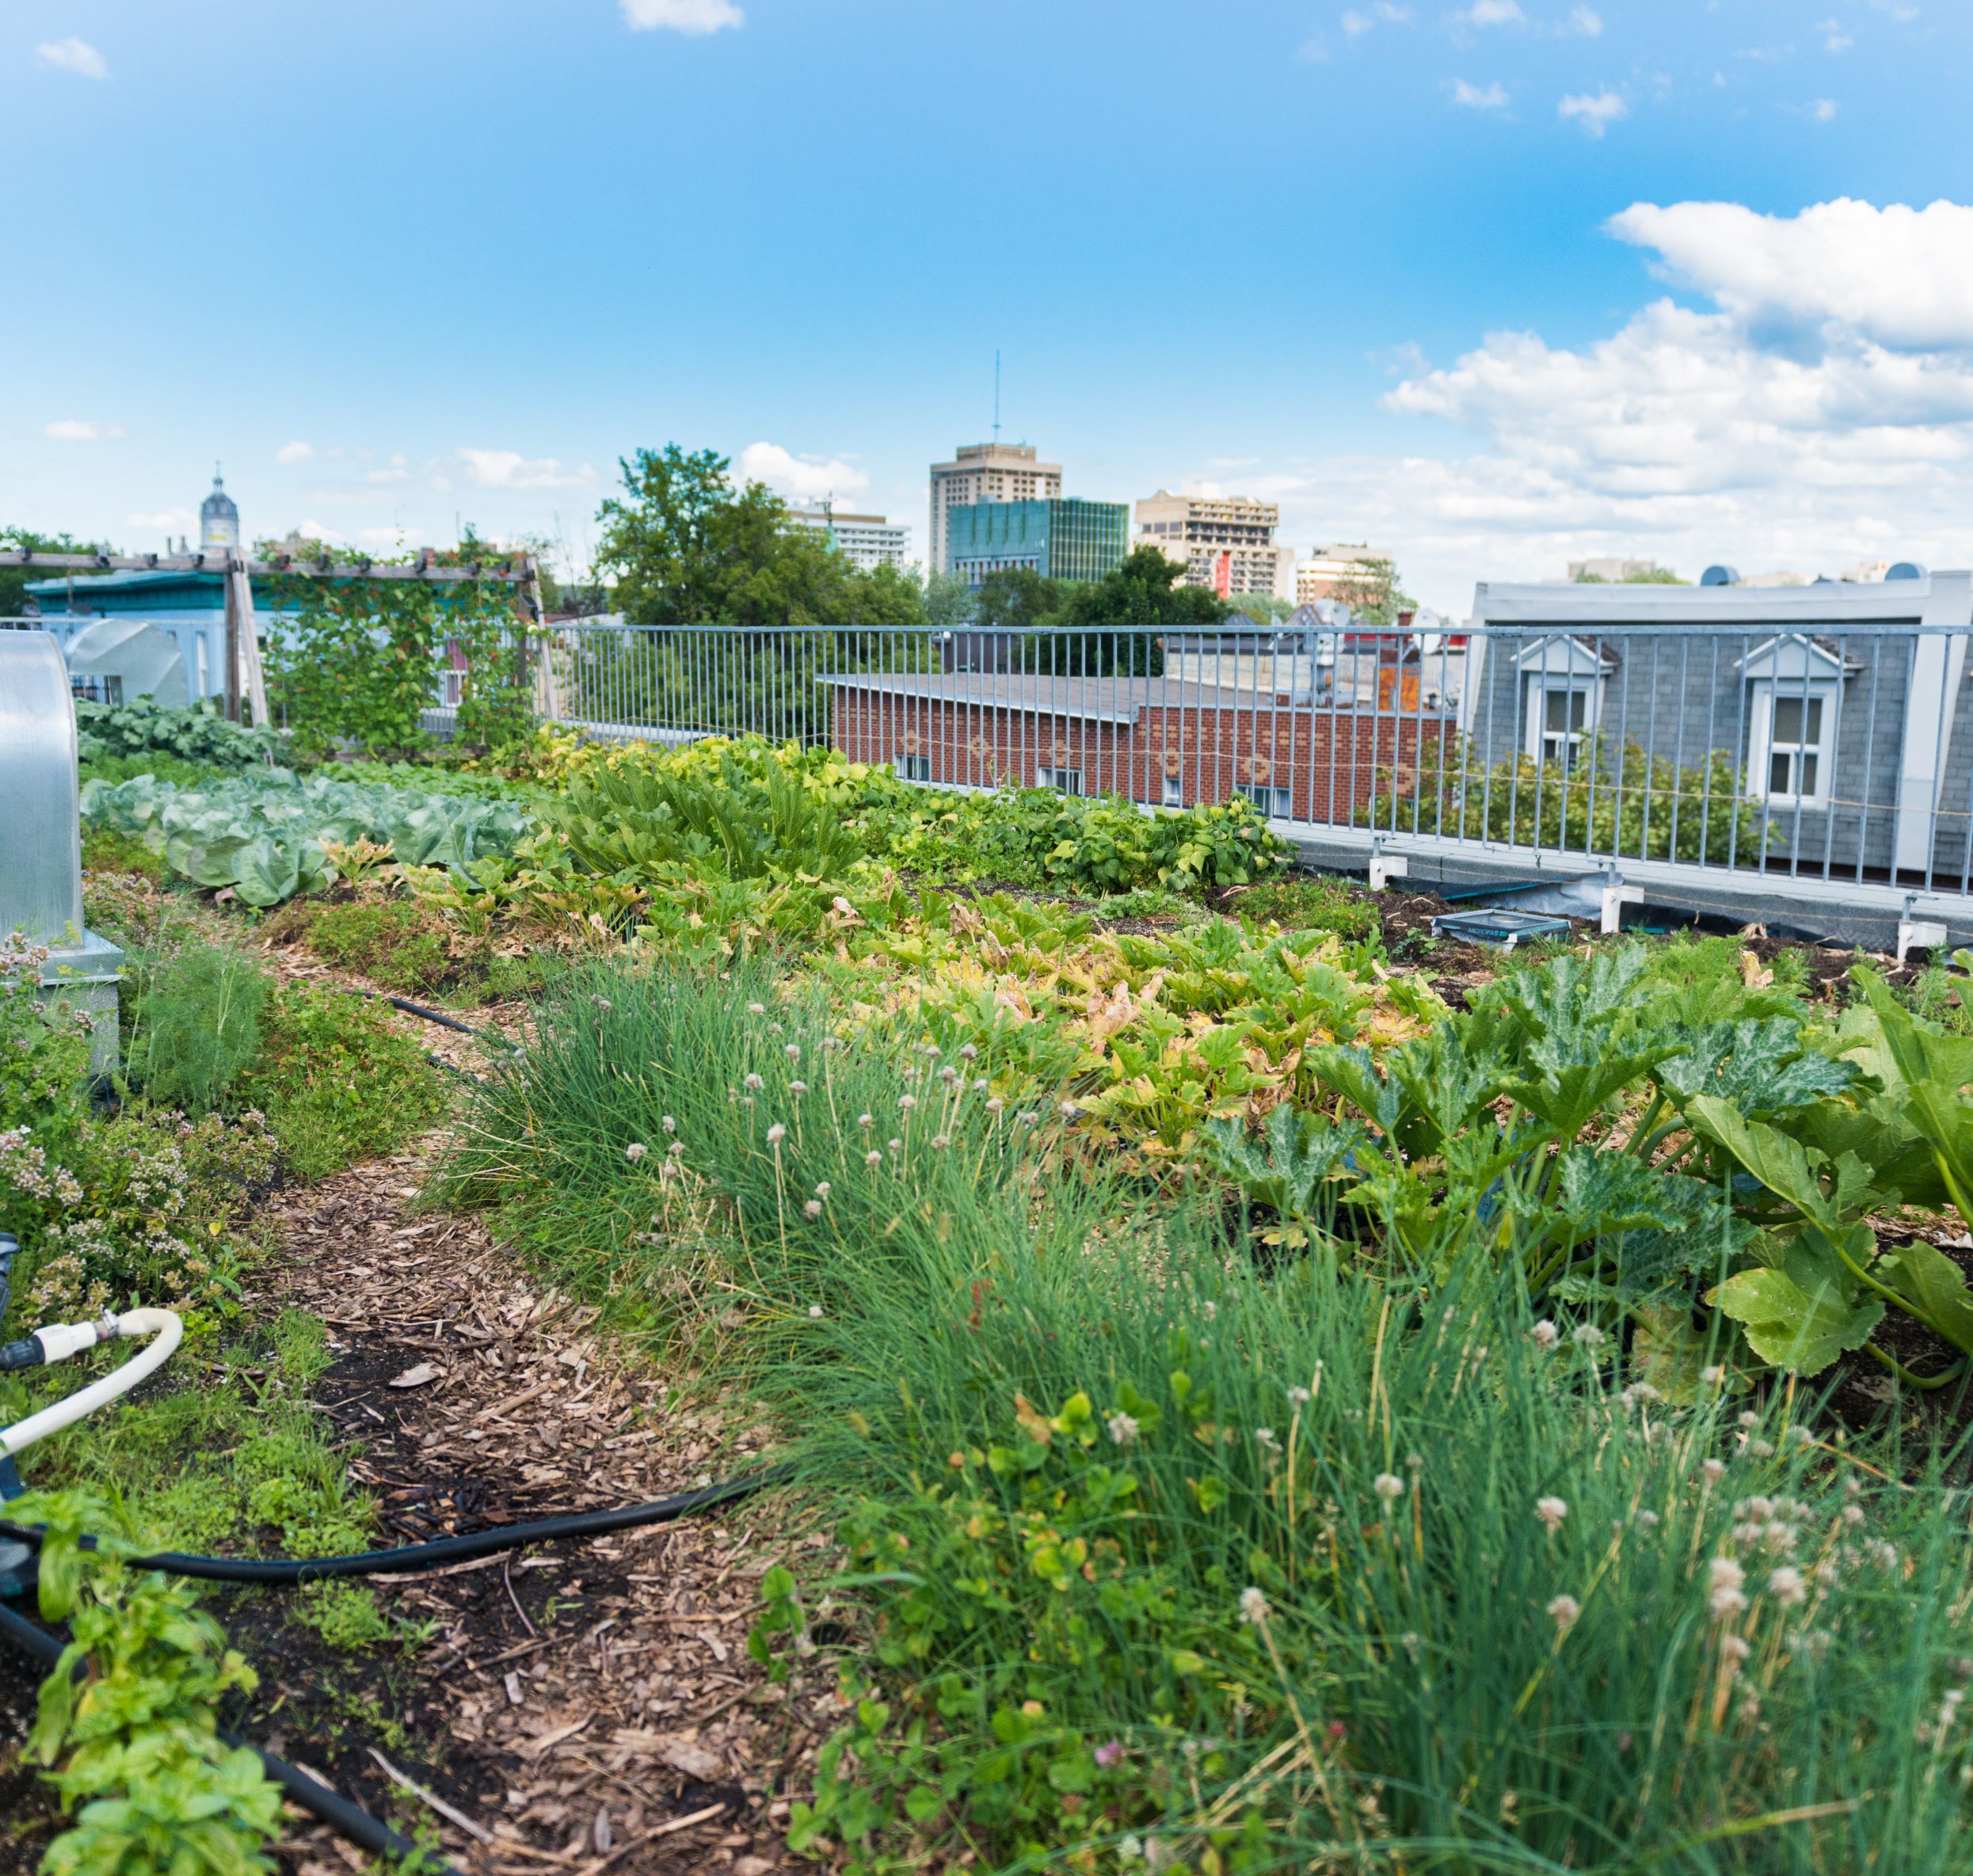 Rooftop greenhouse garden